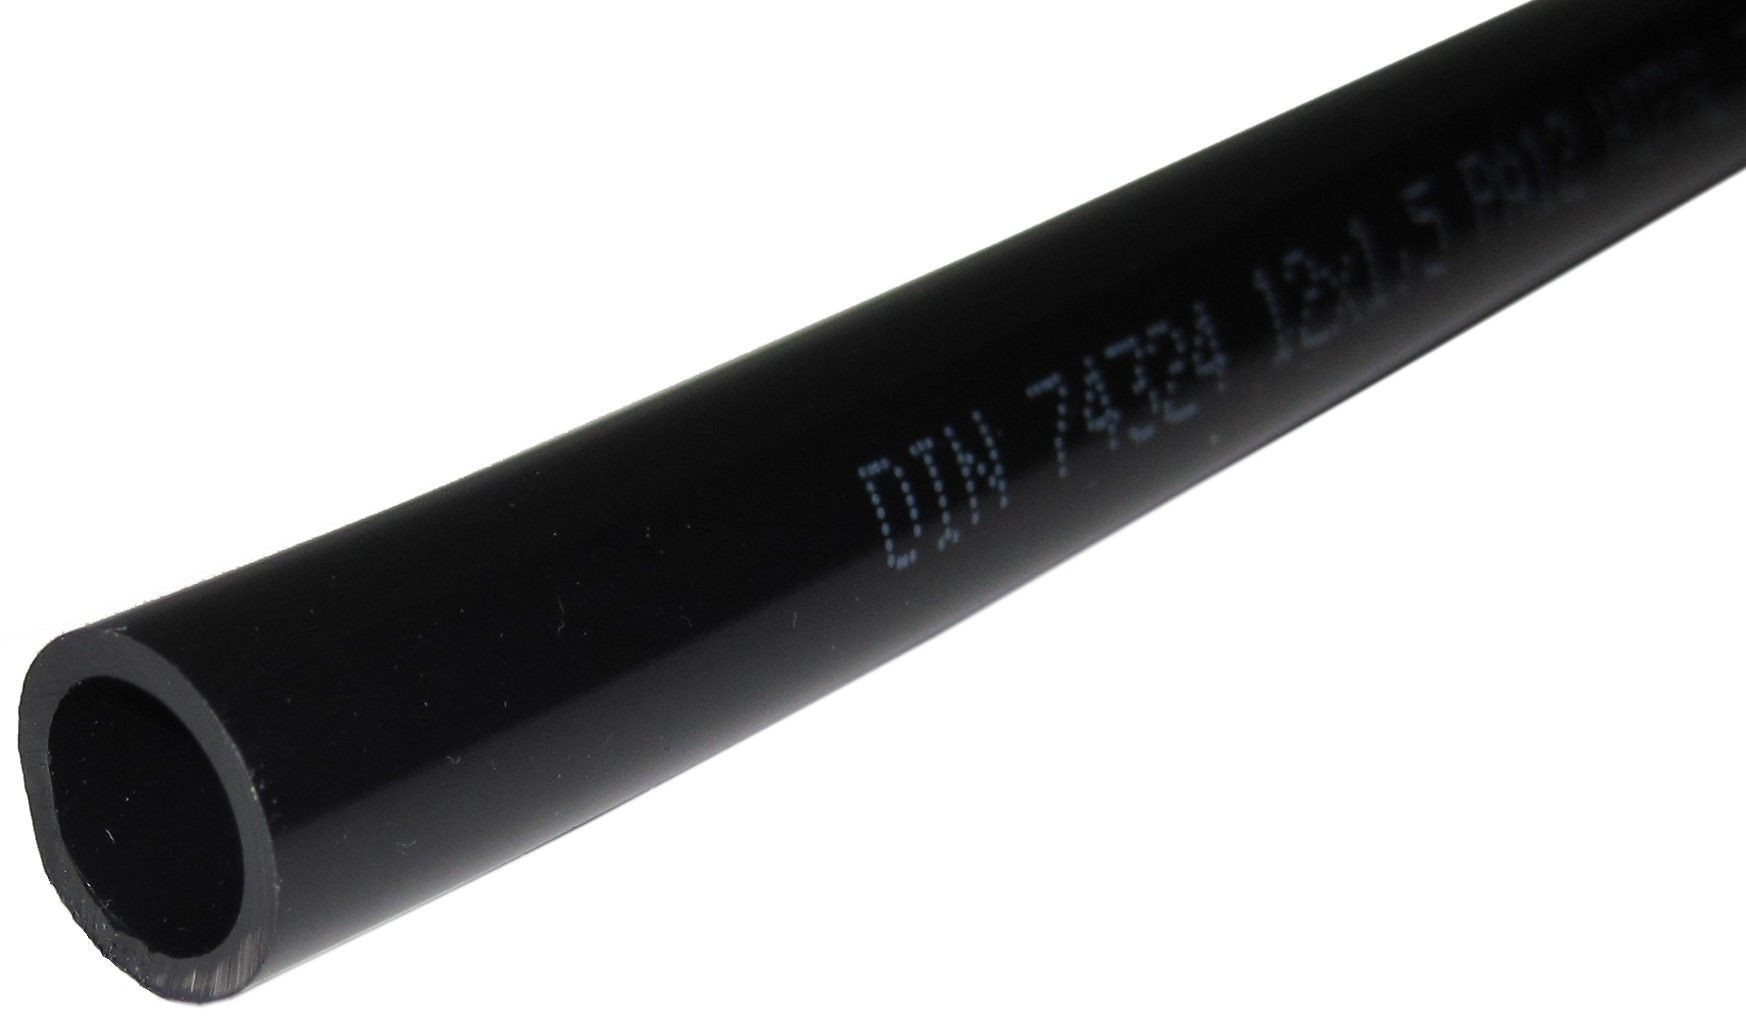 Poly-Rohr 15 x 1,5 schwarz DIN 74324 - PA 12, w, sw, LT online kaufen -  158867 - RAUH Hydraulik